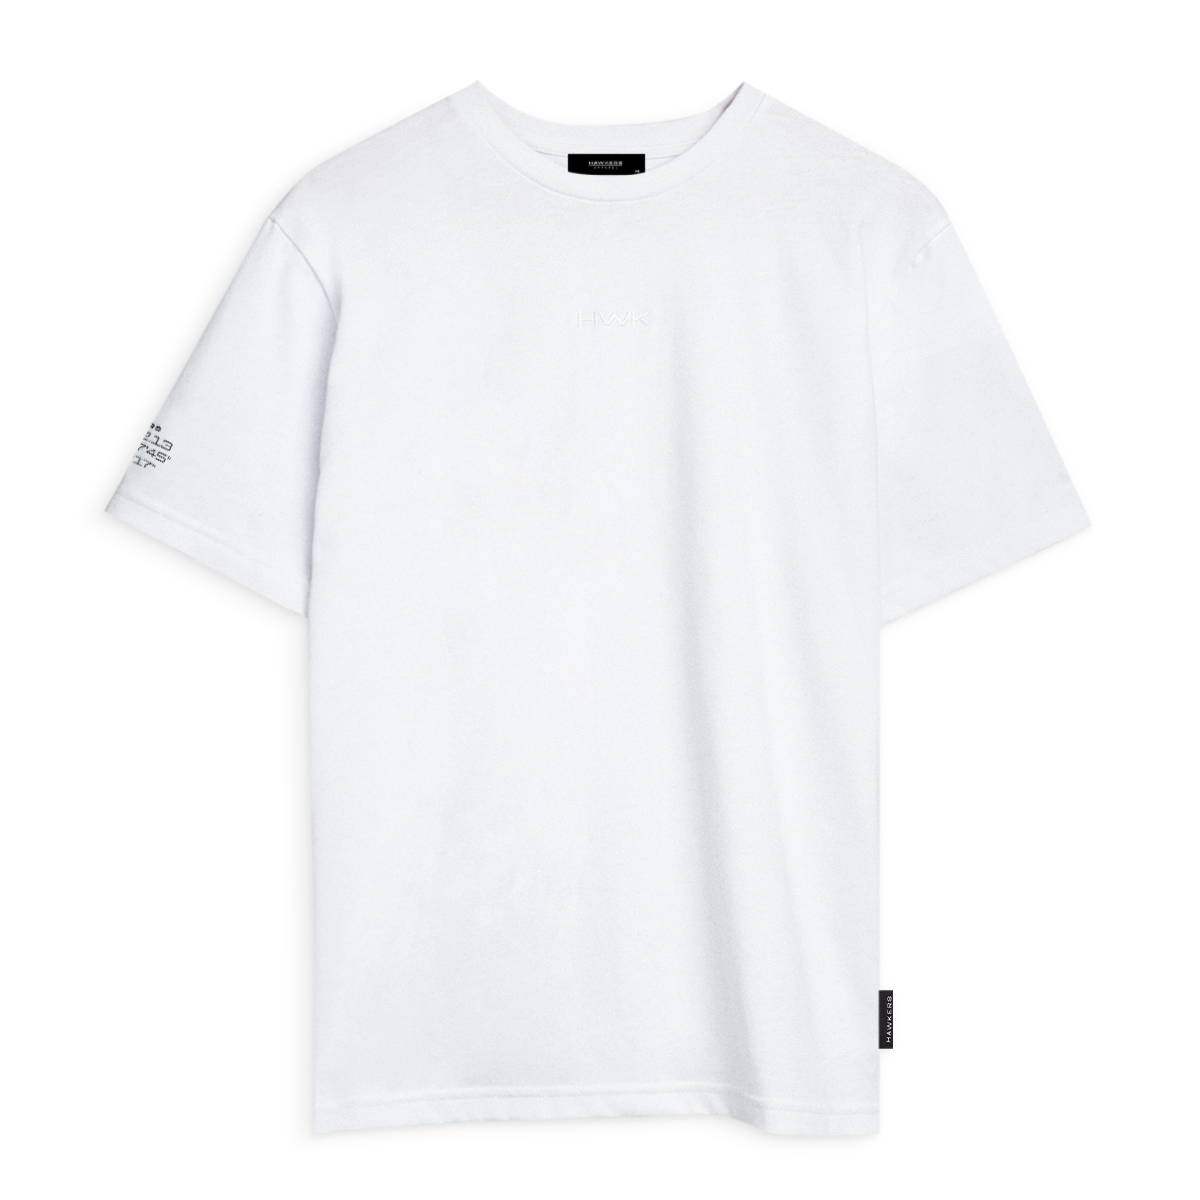 Lax T-shirt White (xs)